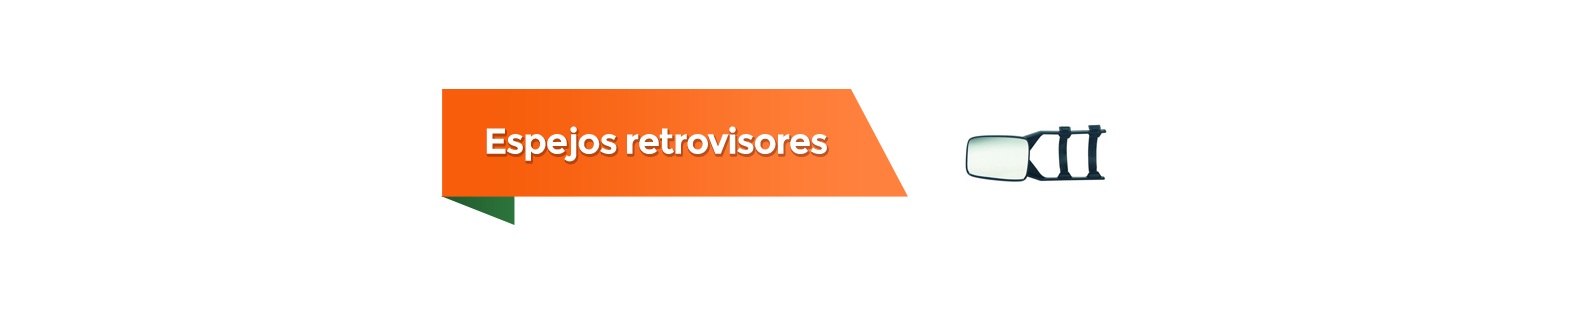 Espejos y Retrovisores para Caravanas: Mejora tu Visibilidad | VidaCampista